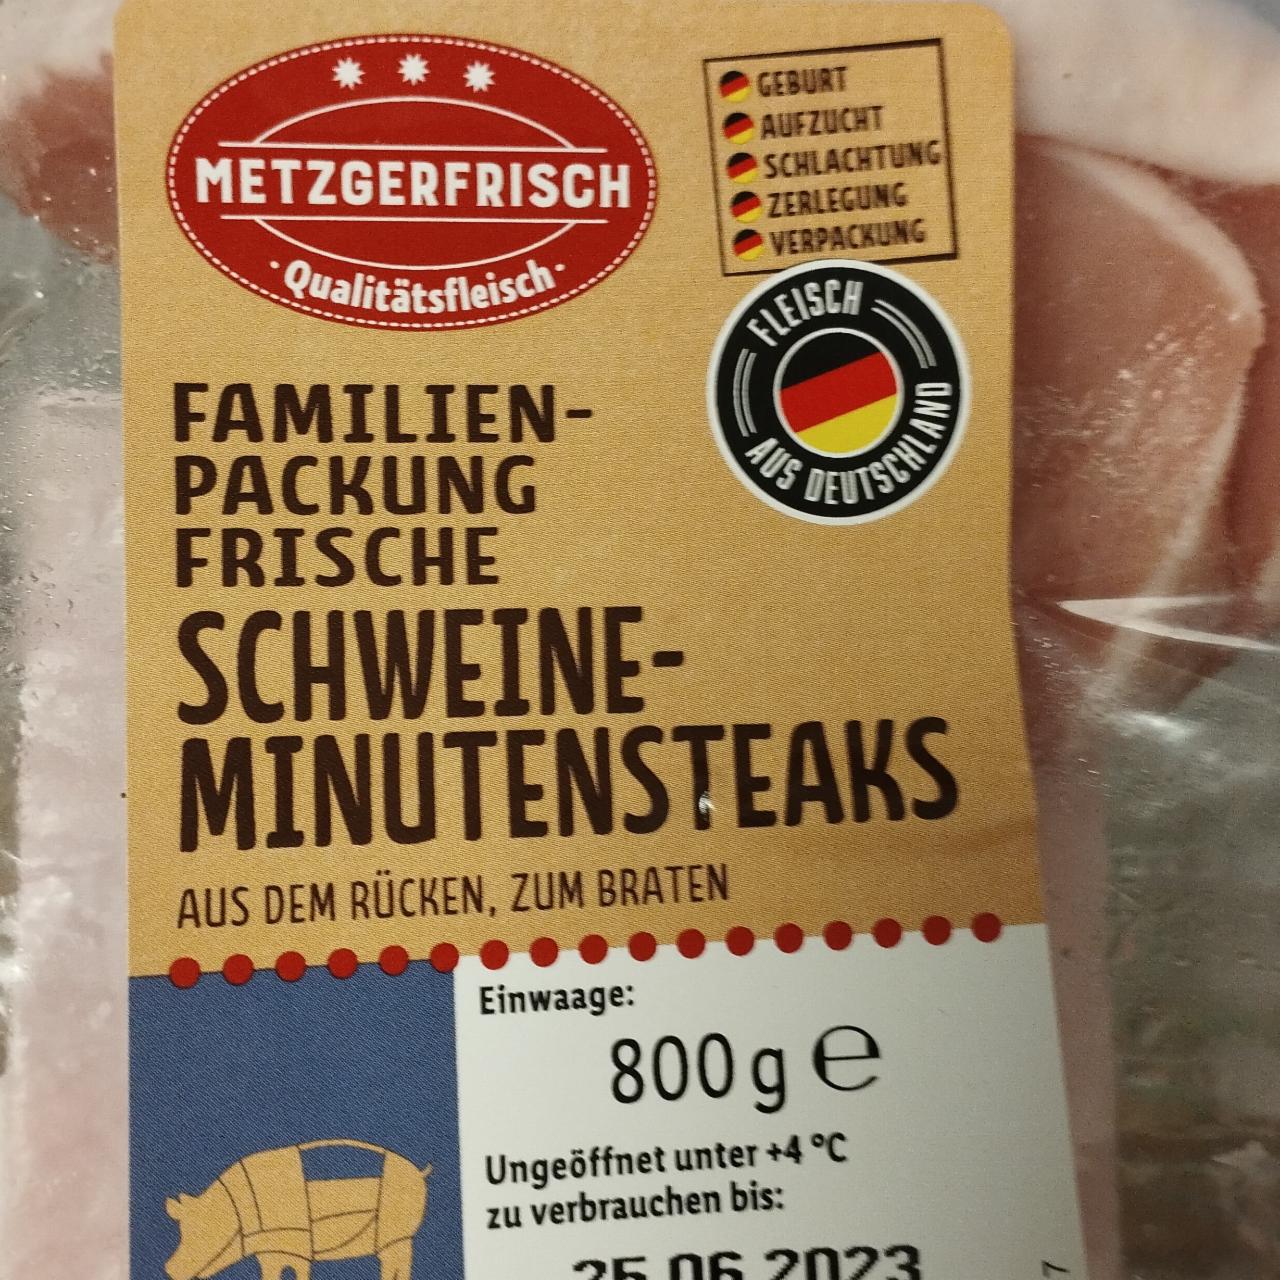 Familien-packung frische schweine minutensteaks Metzgerfrisch -  калорійність, харчова цінність ⋙TablycjaKalorijnosti